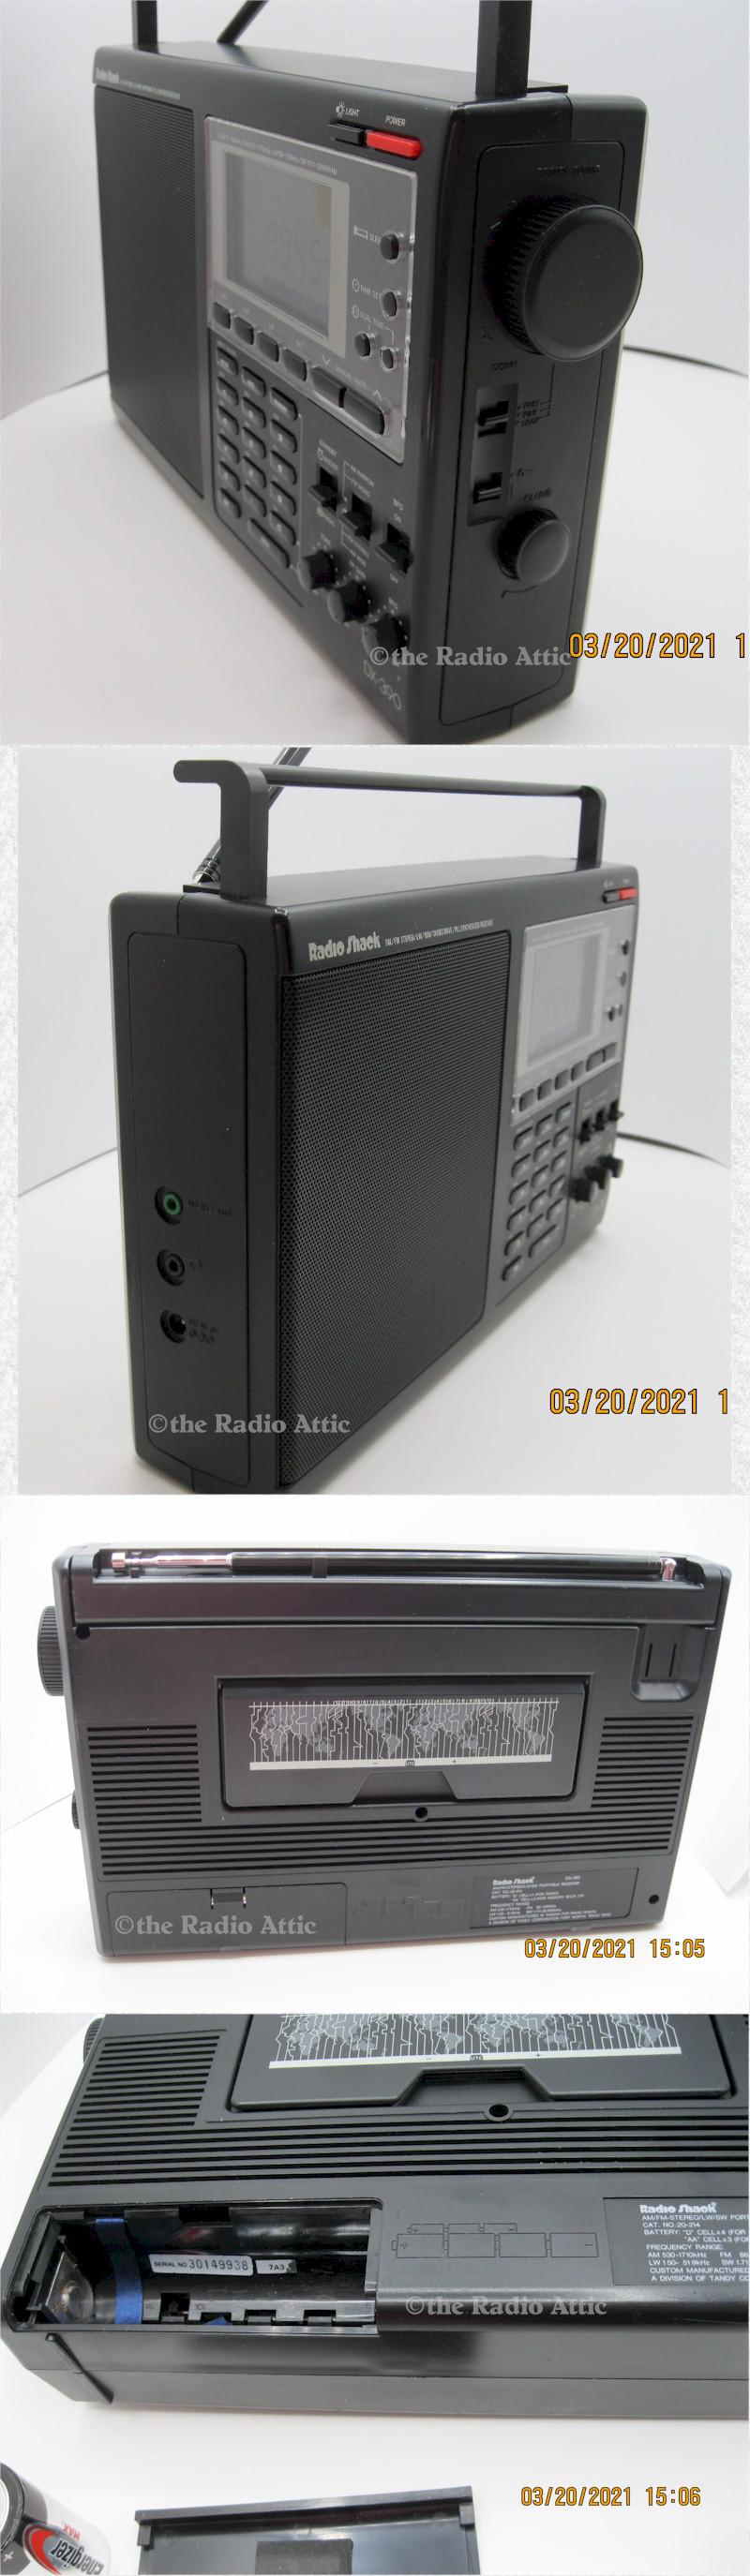 Radio Shack DX-390 Portable Shortwave Receiver (1992/93)